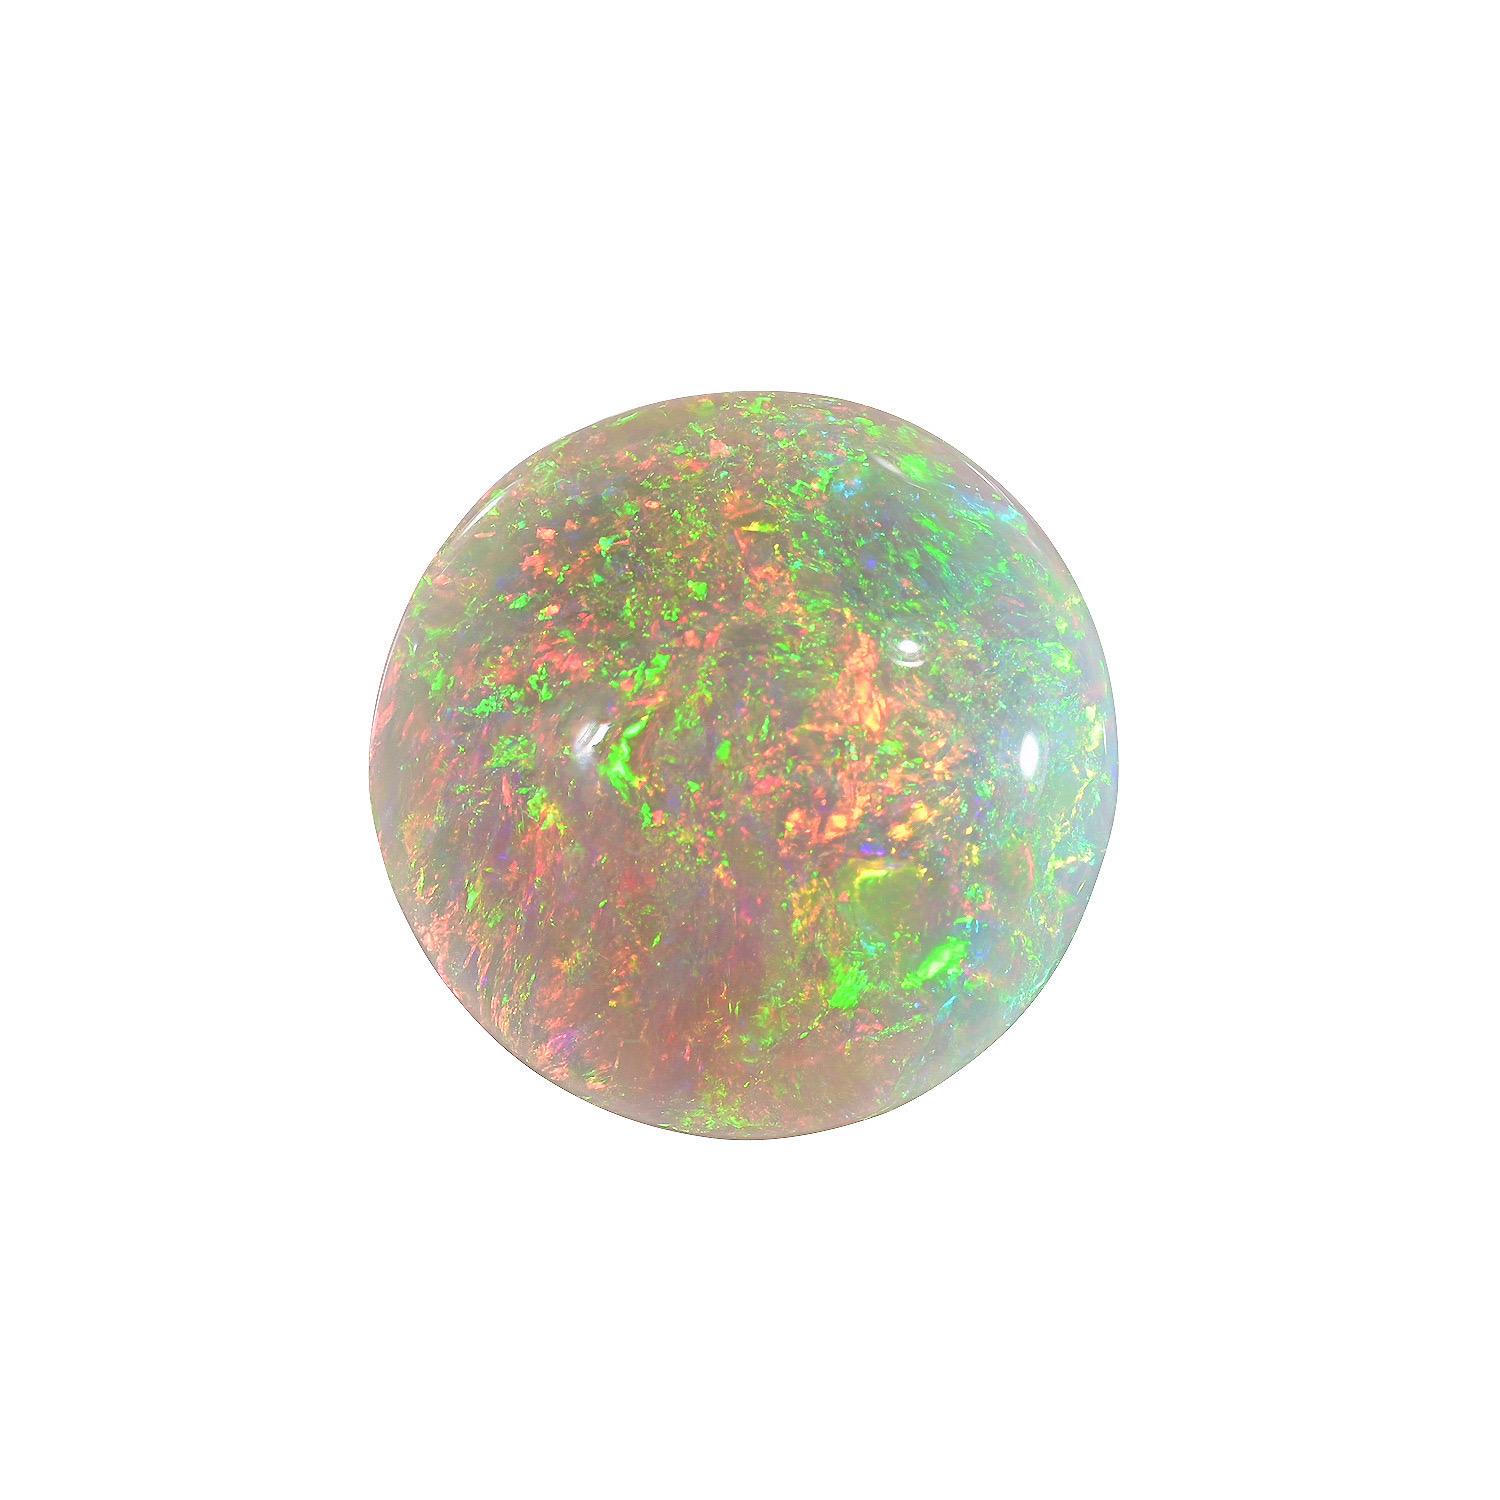 Opale d'Éthiopie ronde naturelle de 16,94 carats, offerte non montée à un connaisseur de pierres précieuses.
Les retours sont acceptés et pris en charge dans les sept jours suivant la livraison.
Nous offrons d'excellents travaux de bijouterie sur